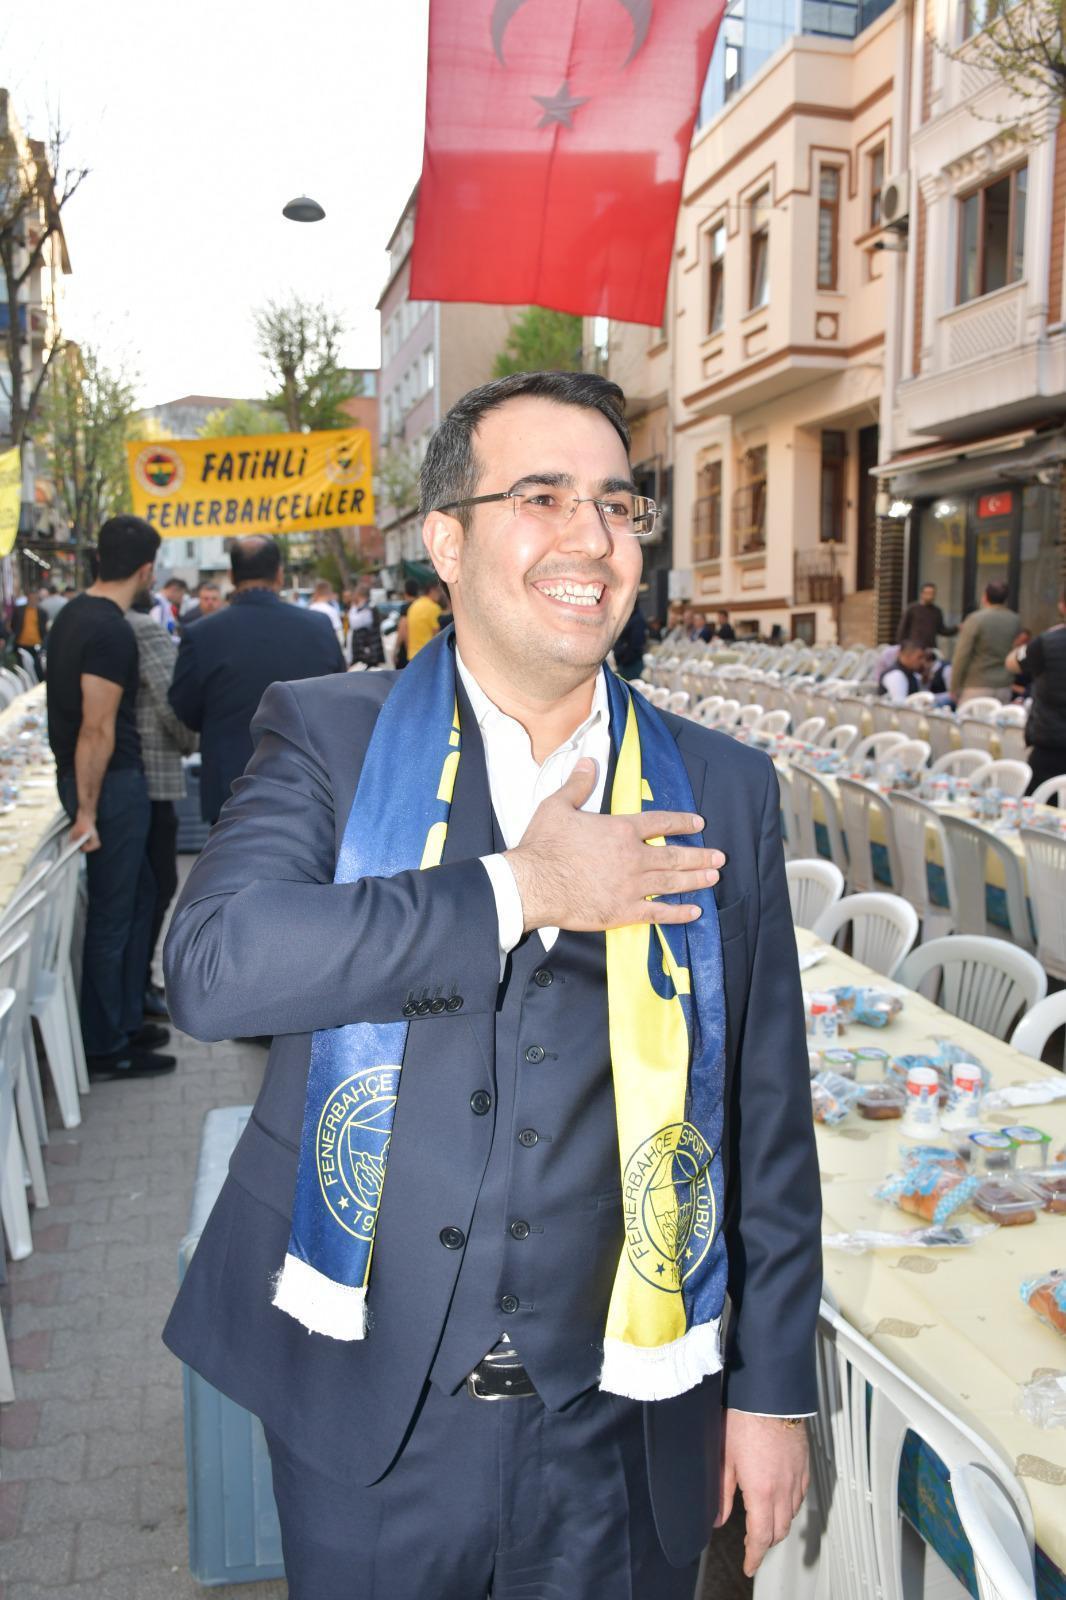 Fatihli Fenerbahçeliler iftarda buluştu